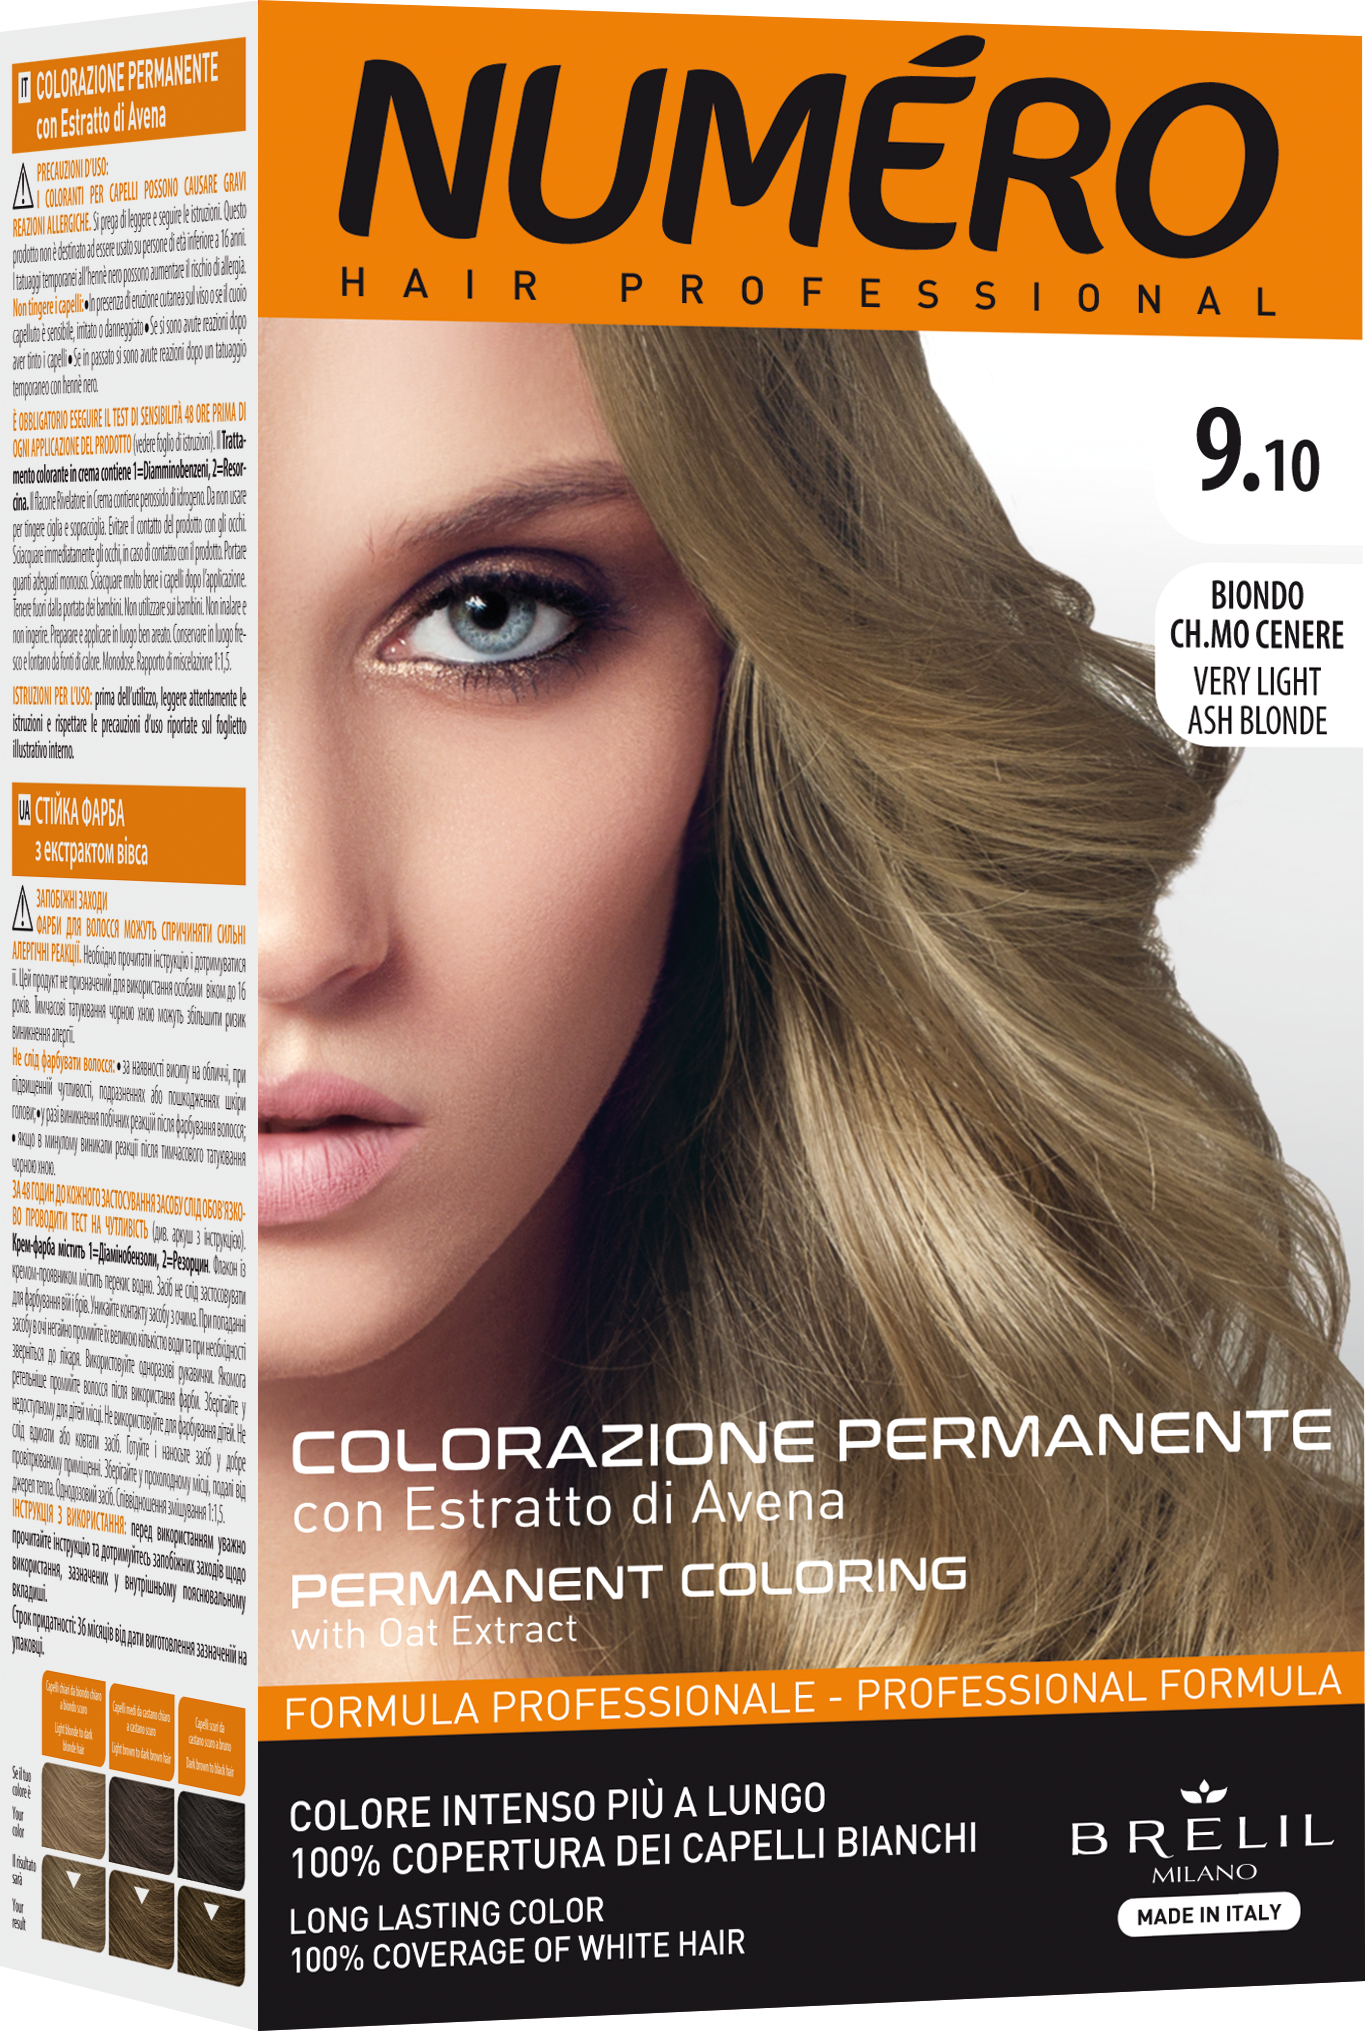 Фарба для волосся Numero Hair Professional Very light ash blonde, відтінок 9.10 (Ультрасвітлий попелястий блонд), 140 мл - фото 1